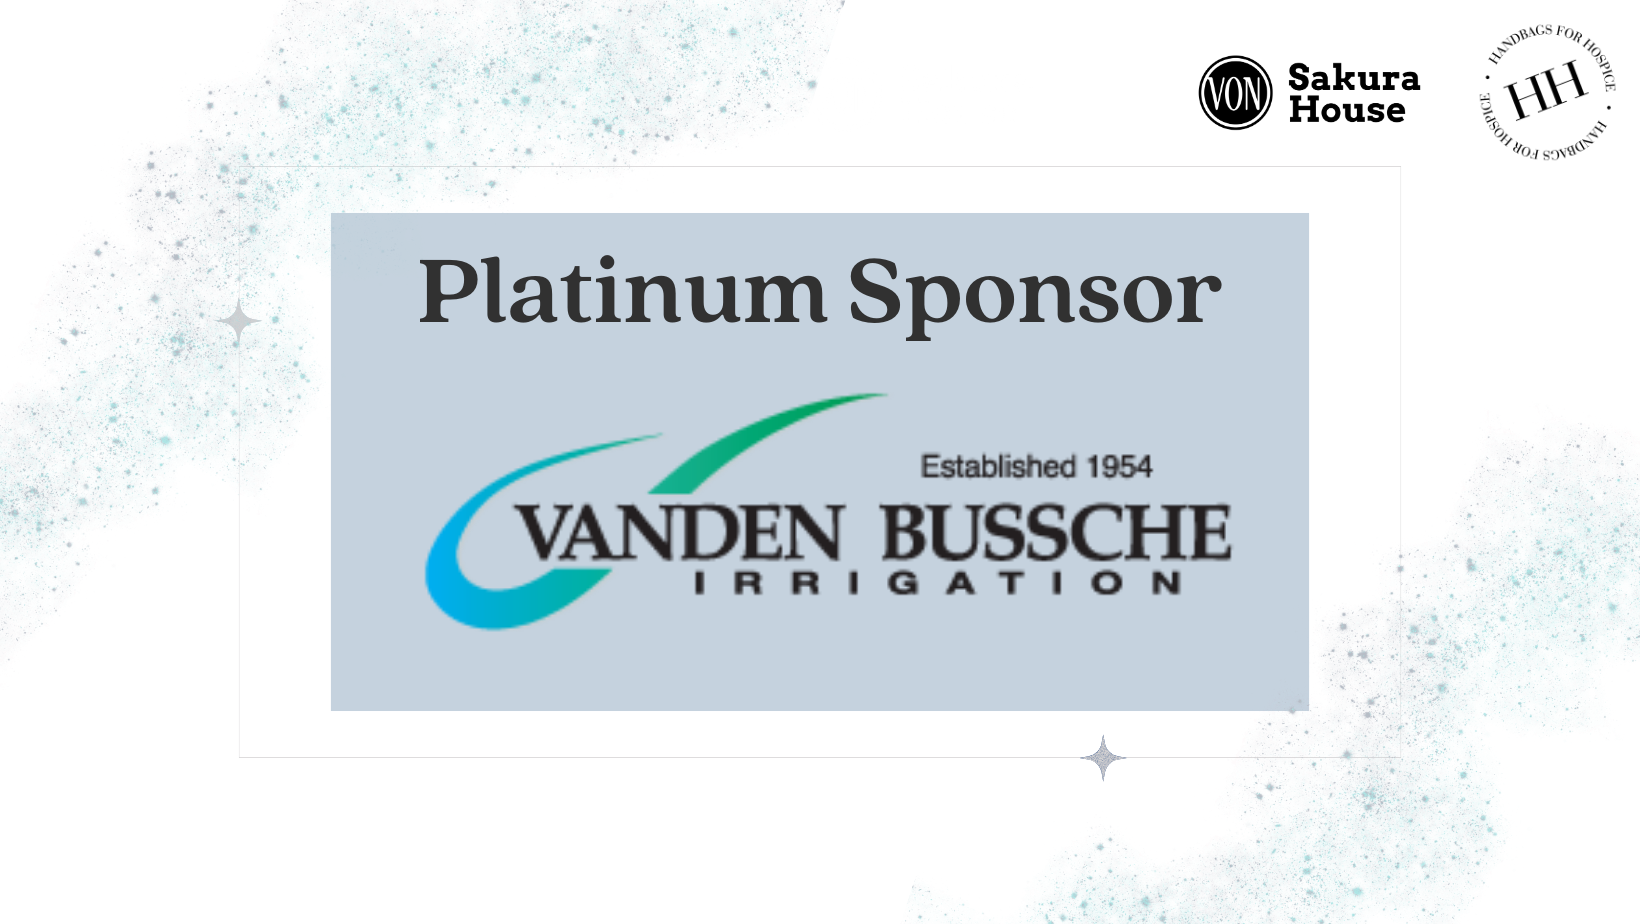 Vandenbussche Irrigation & Equipment Ltd.